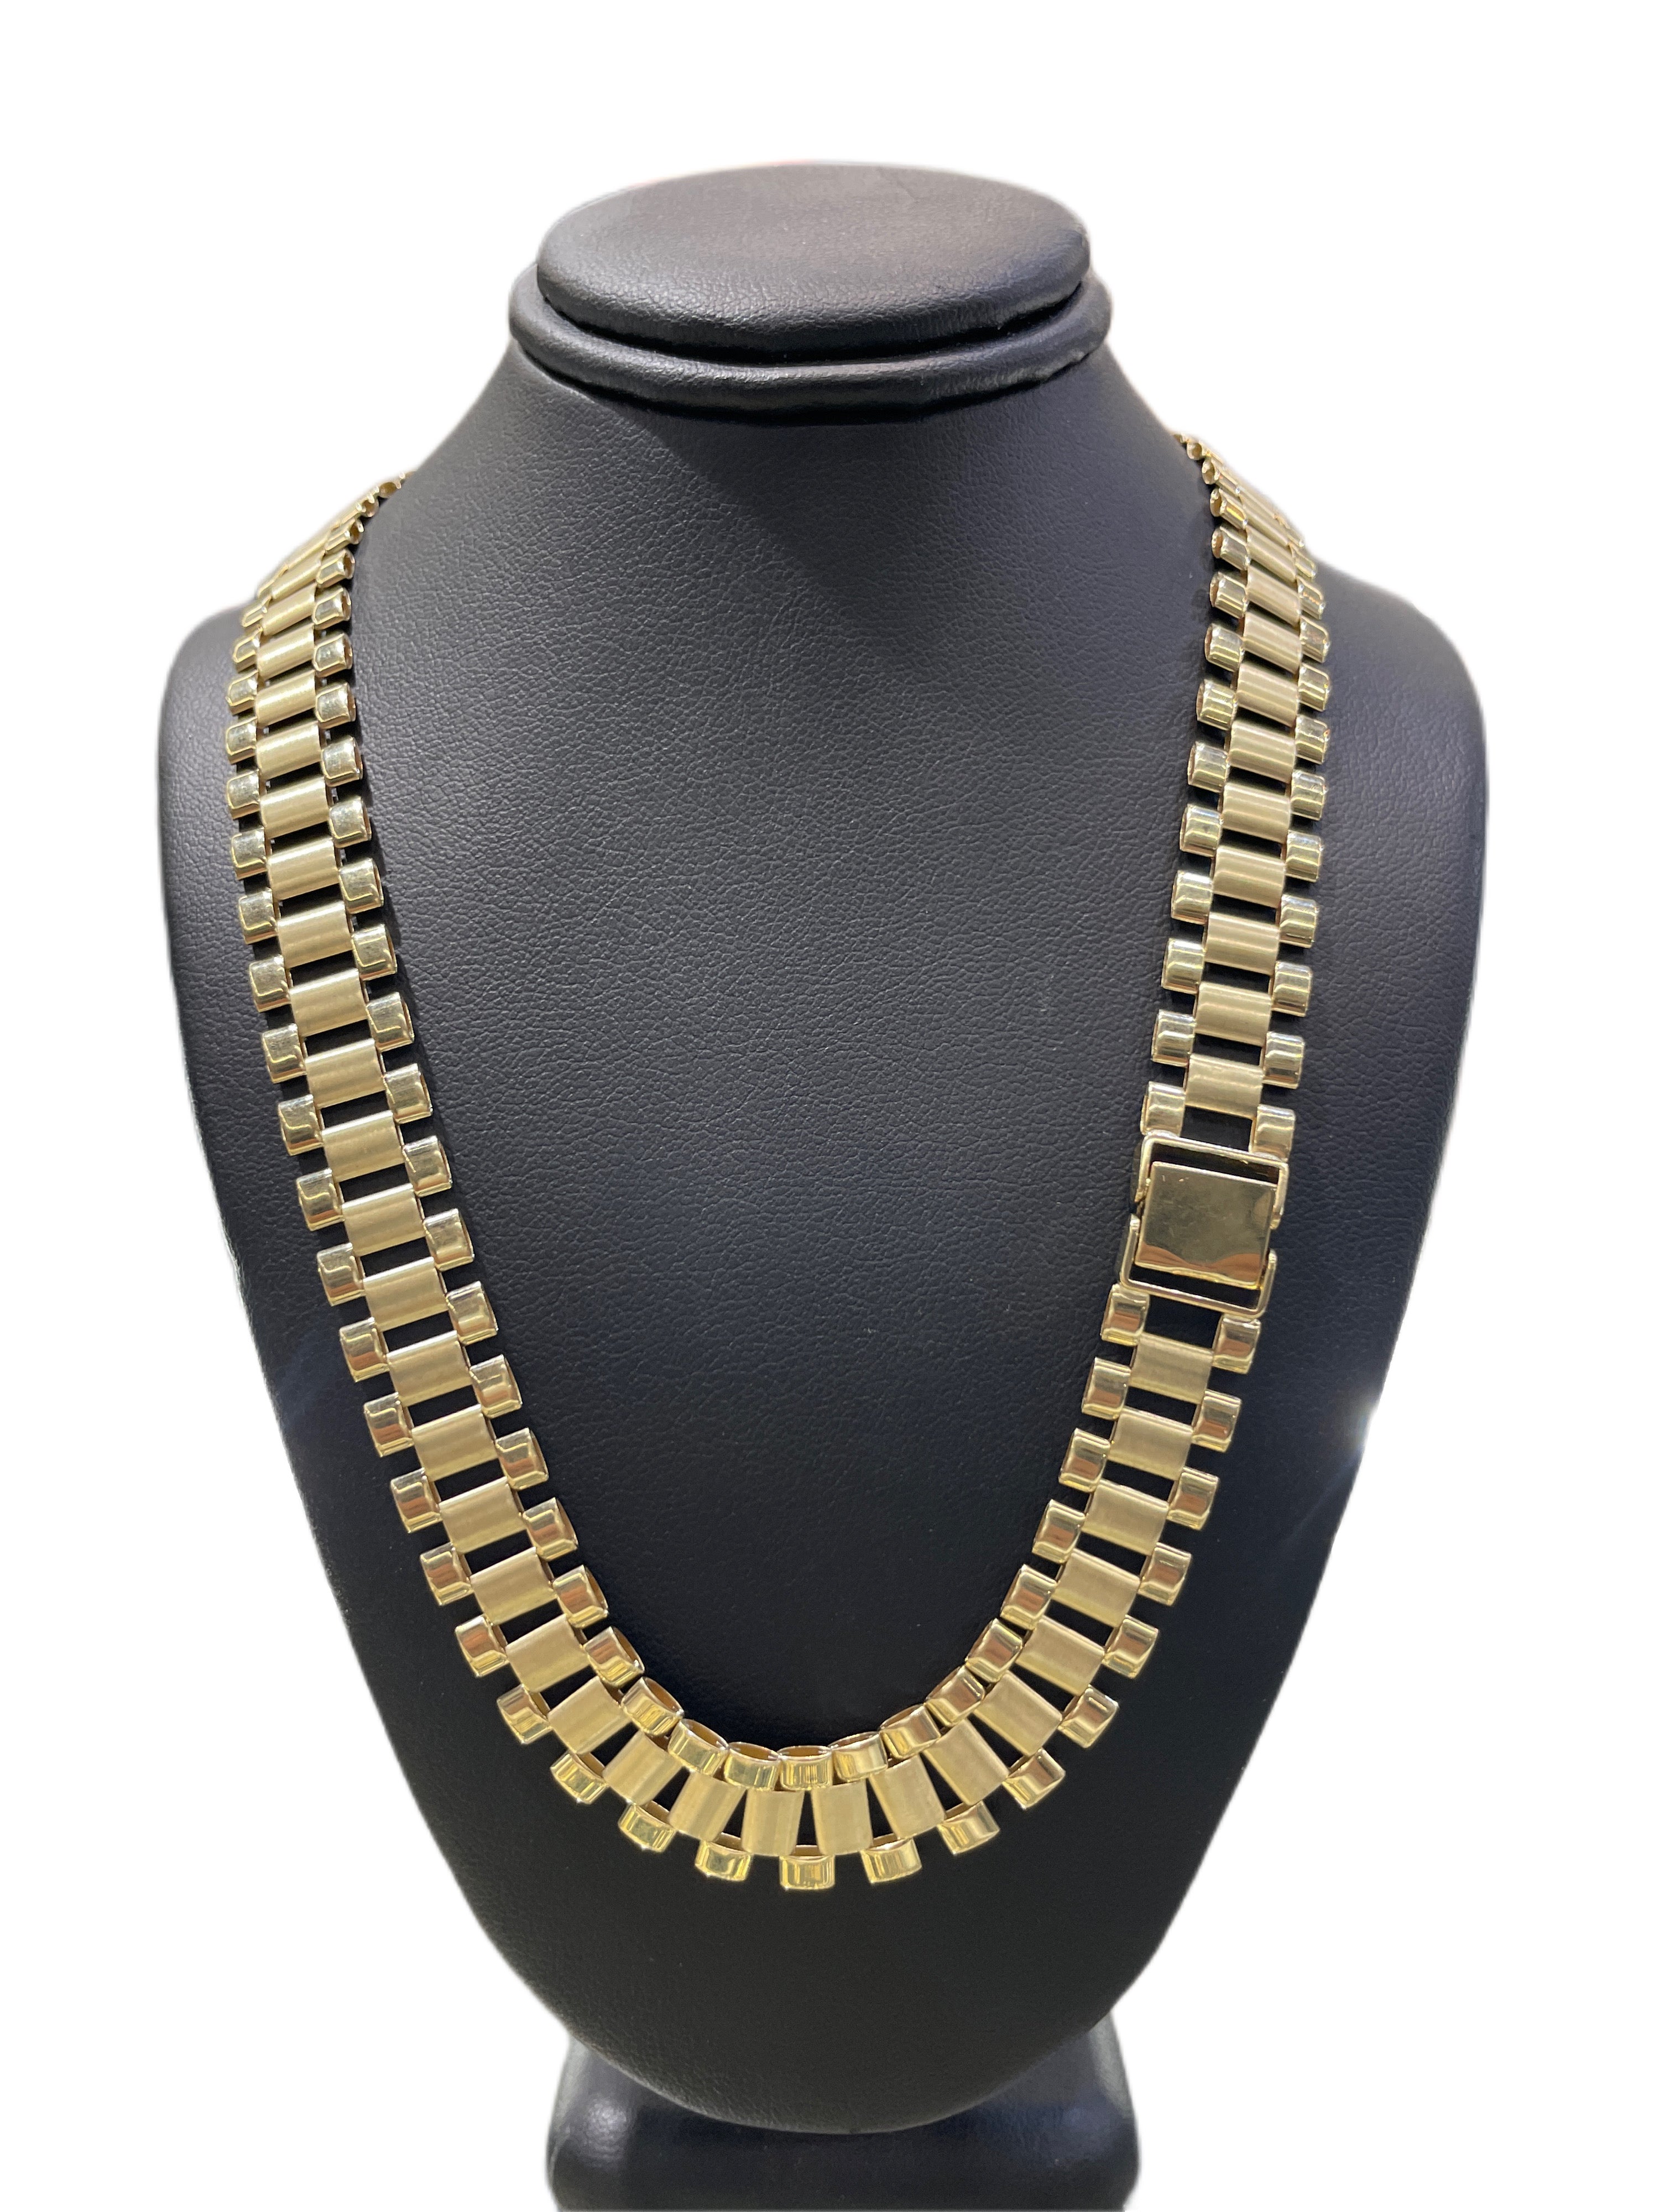 10K GOLD ROLEX STYLE CHAIN 5MM – 24MM – Devon Jeweler